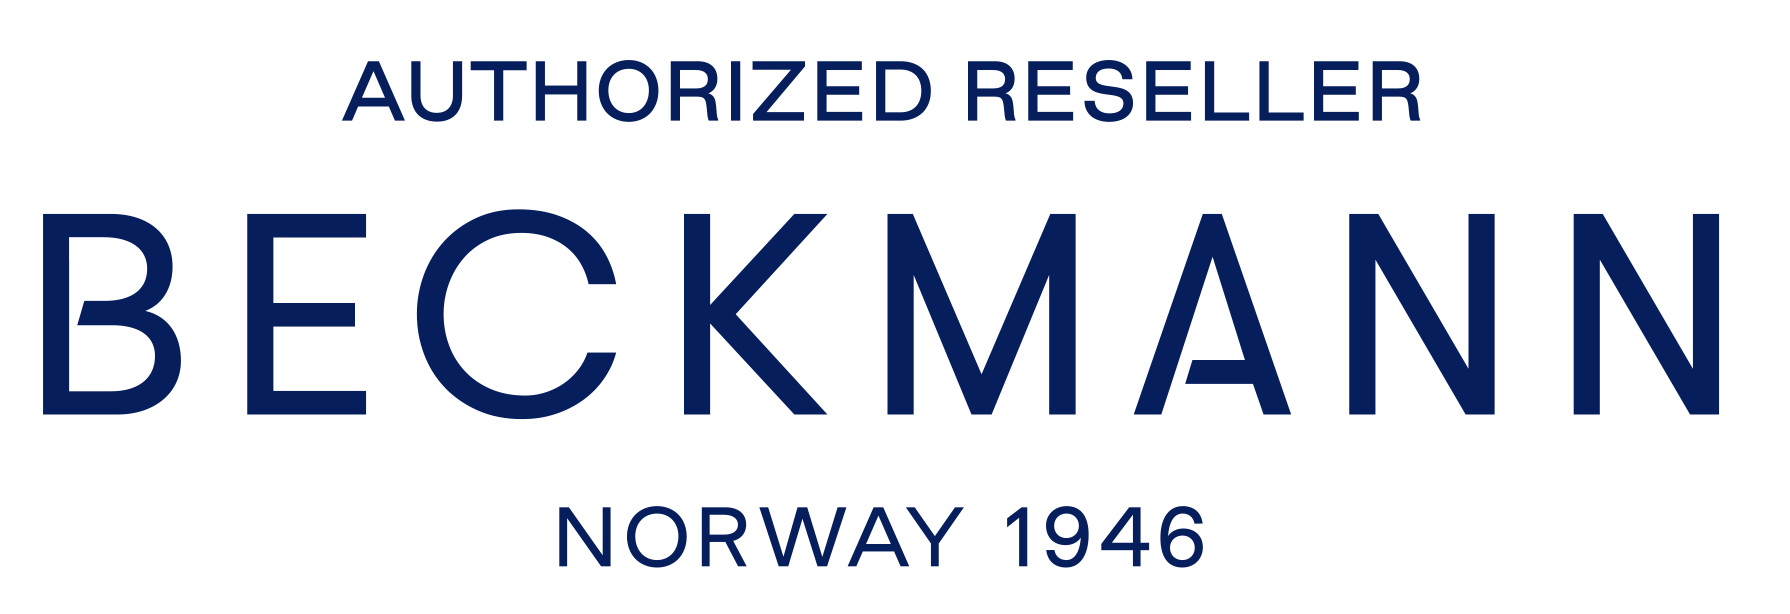 beckmann-logo